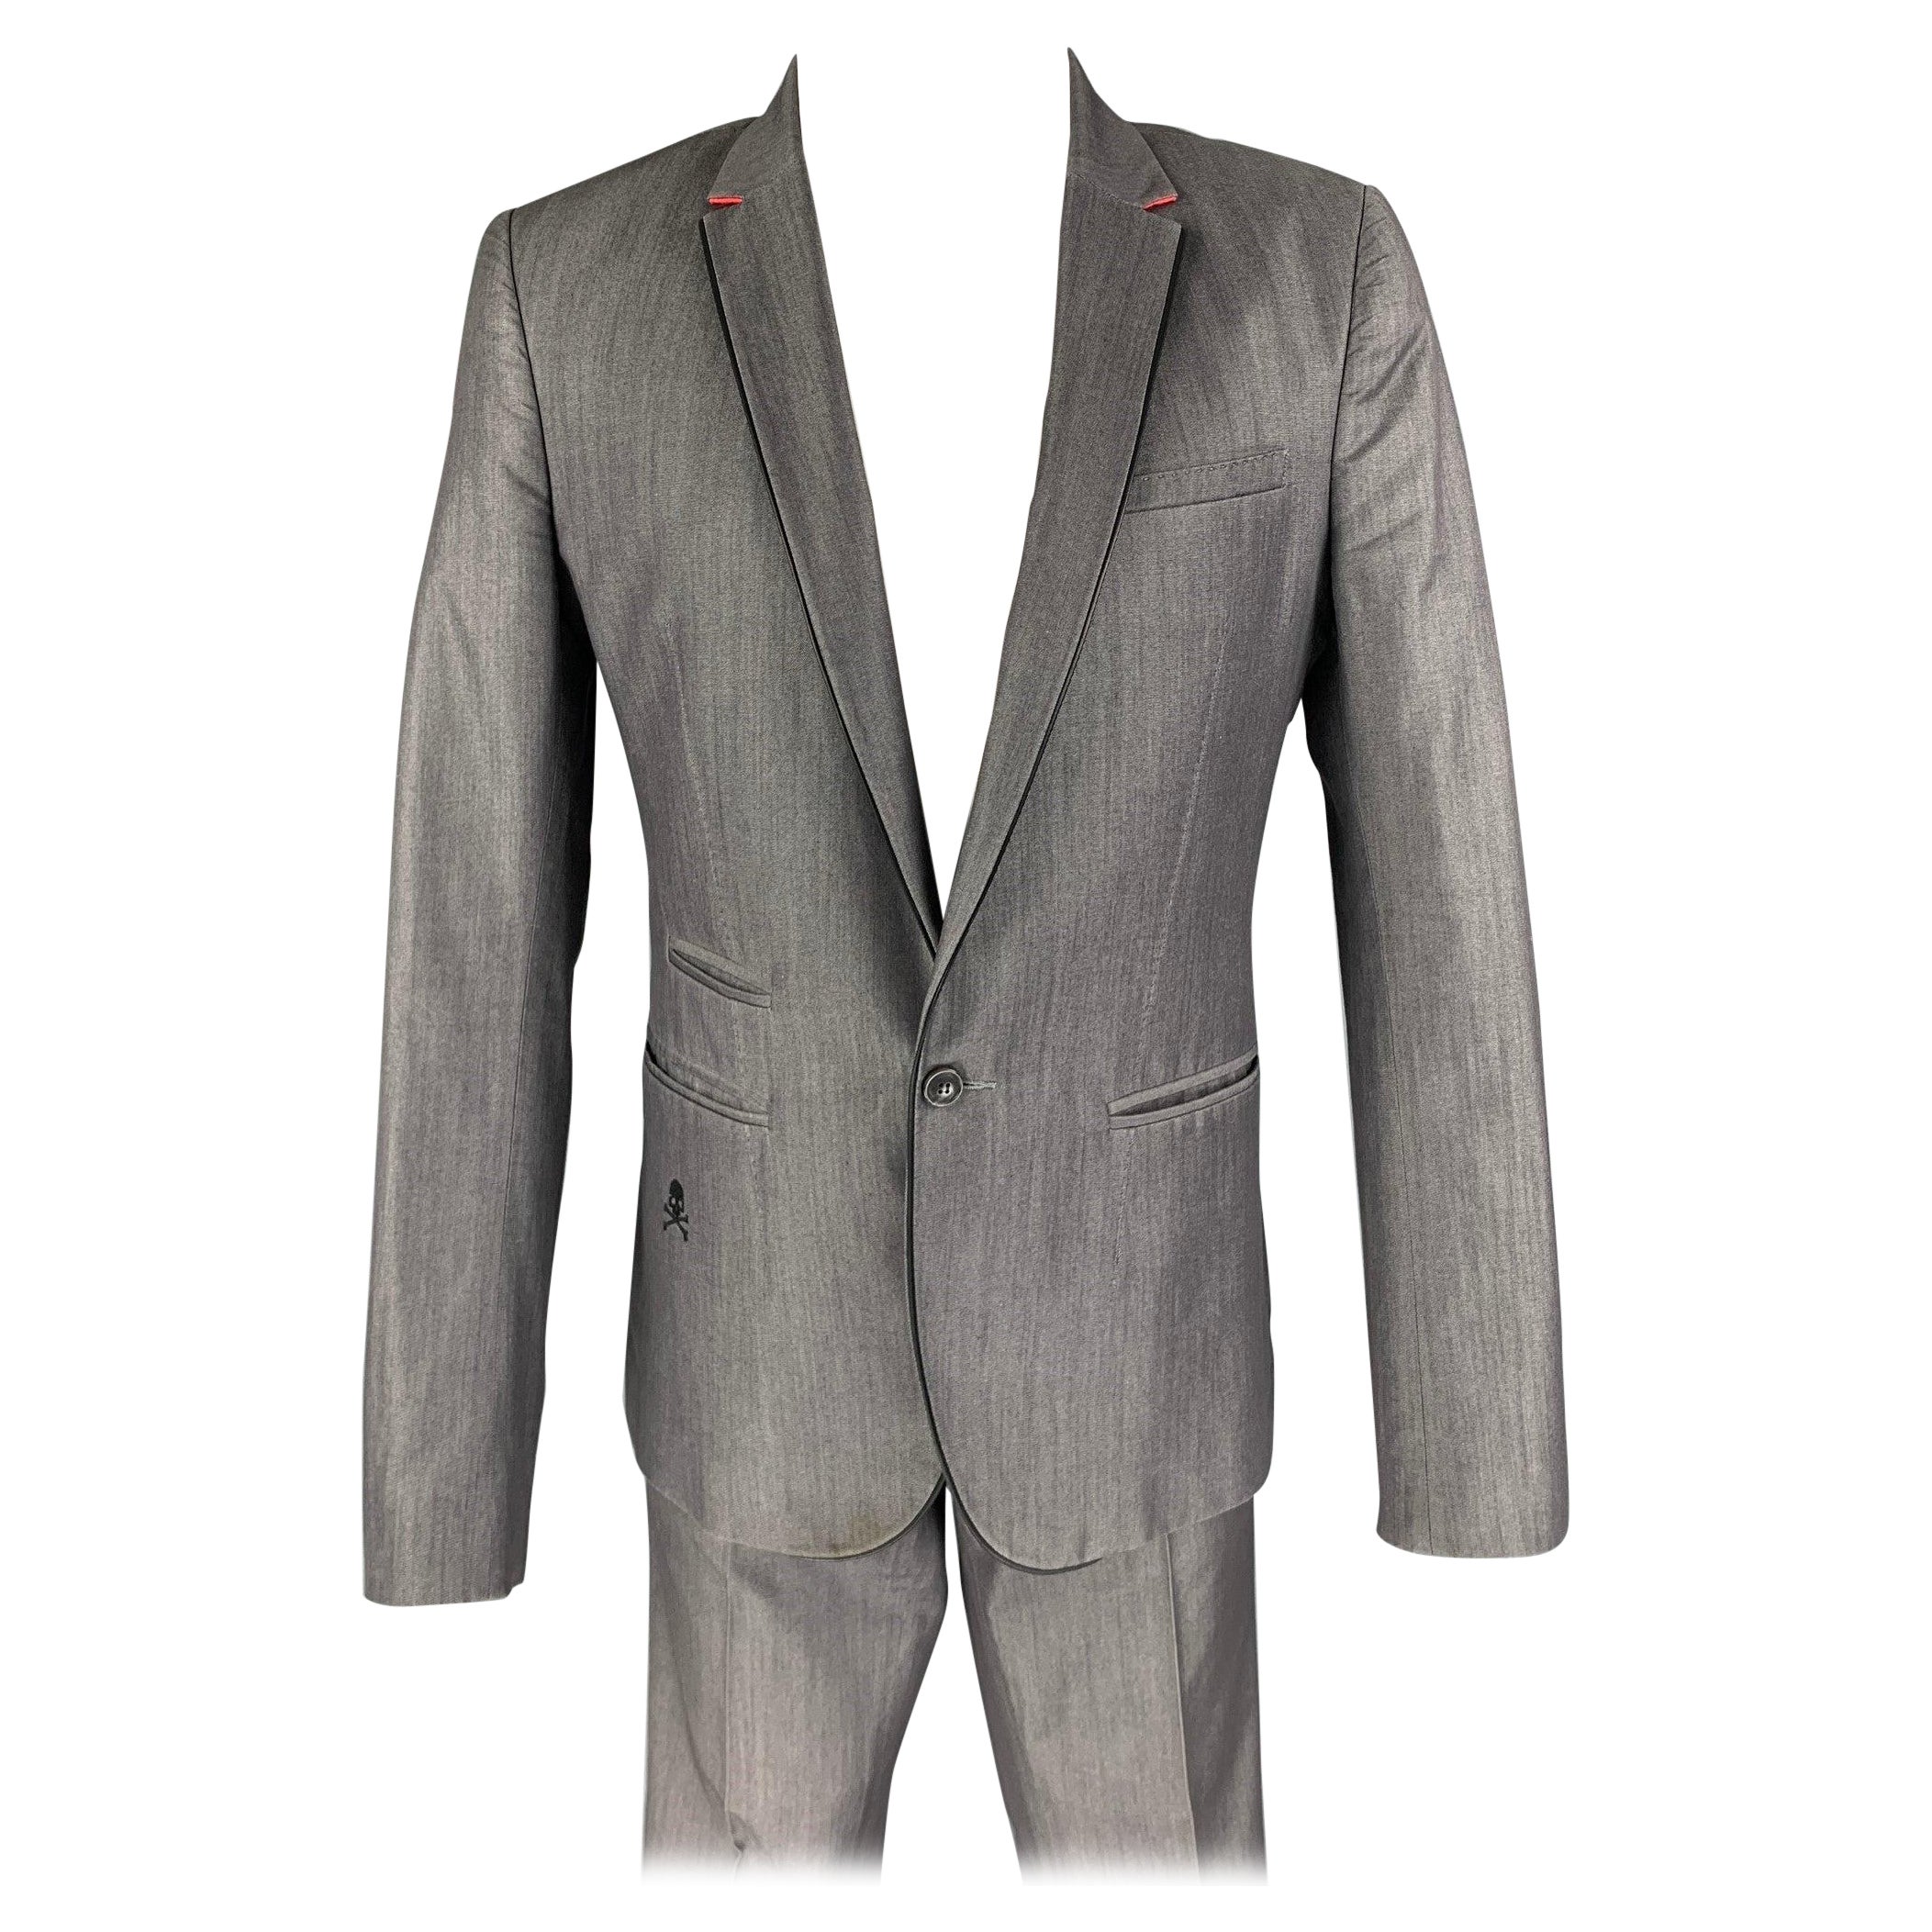 PHILIPP PLEIN Size 38 Light Gray Cotton Blend Single Button Suit For Sale